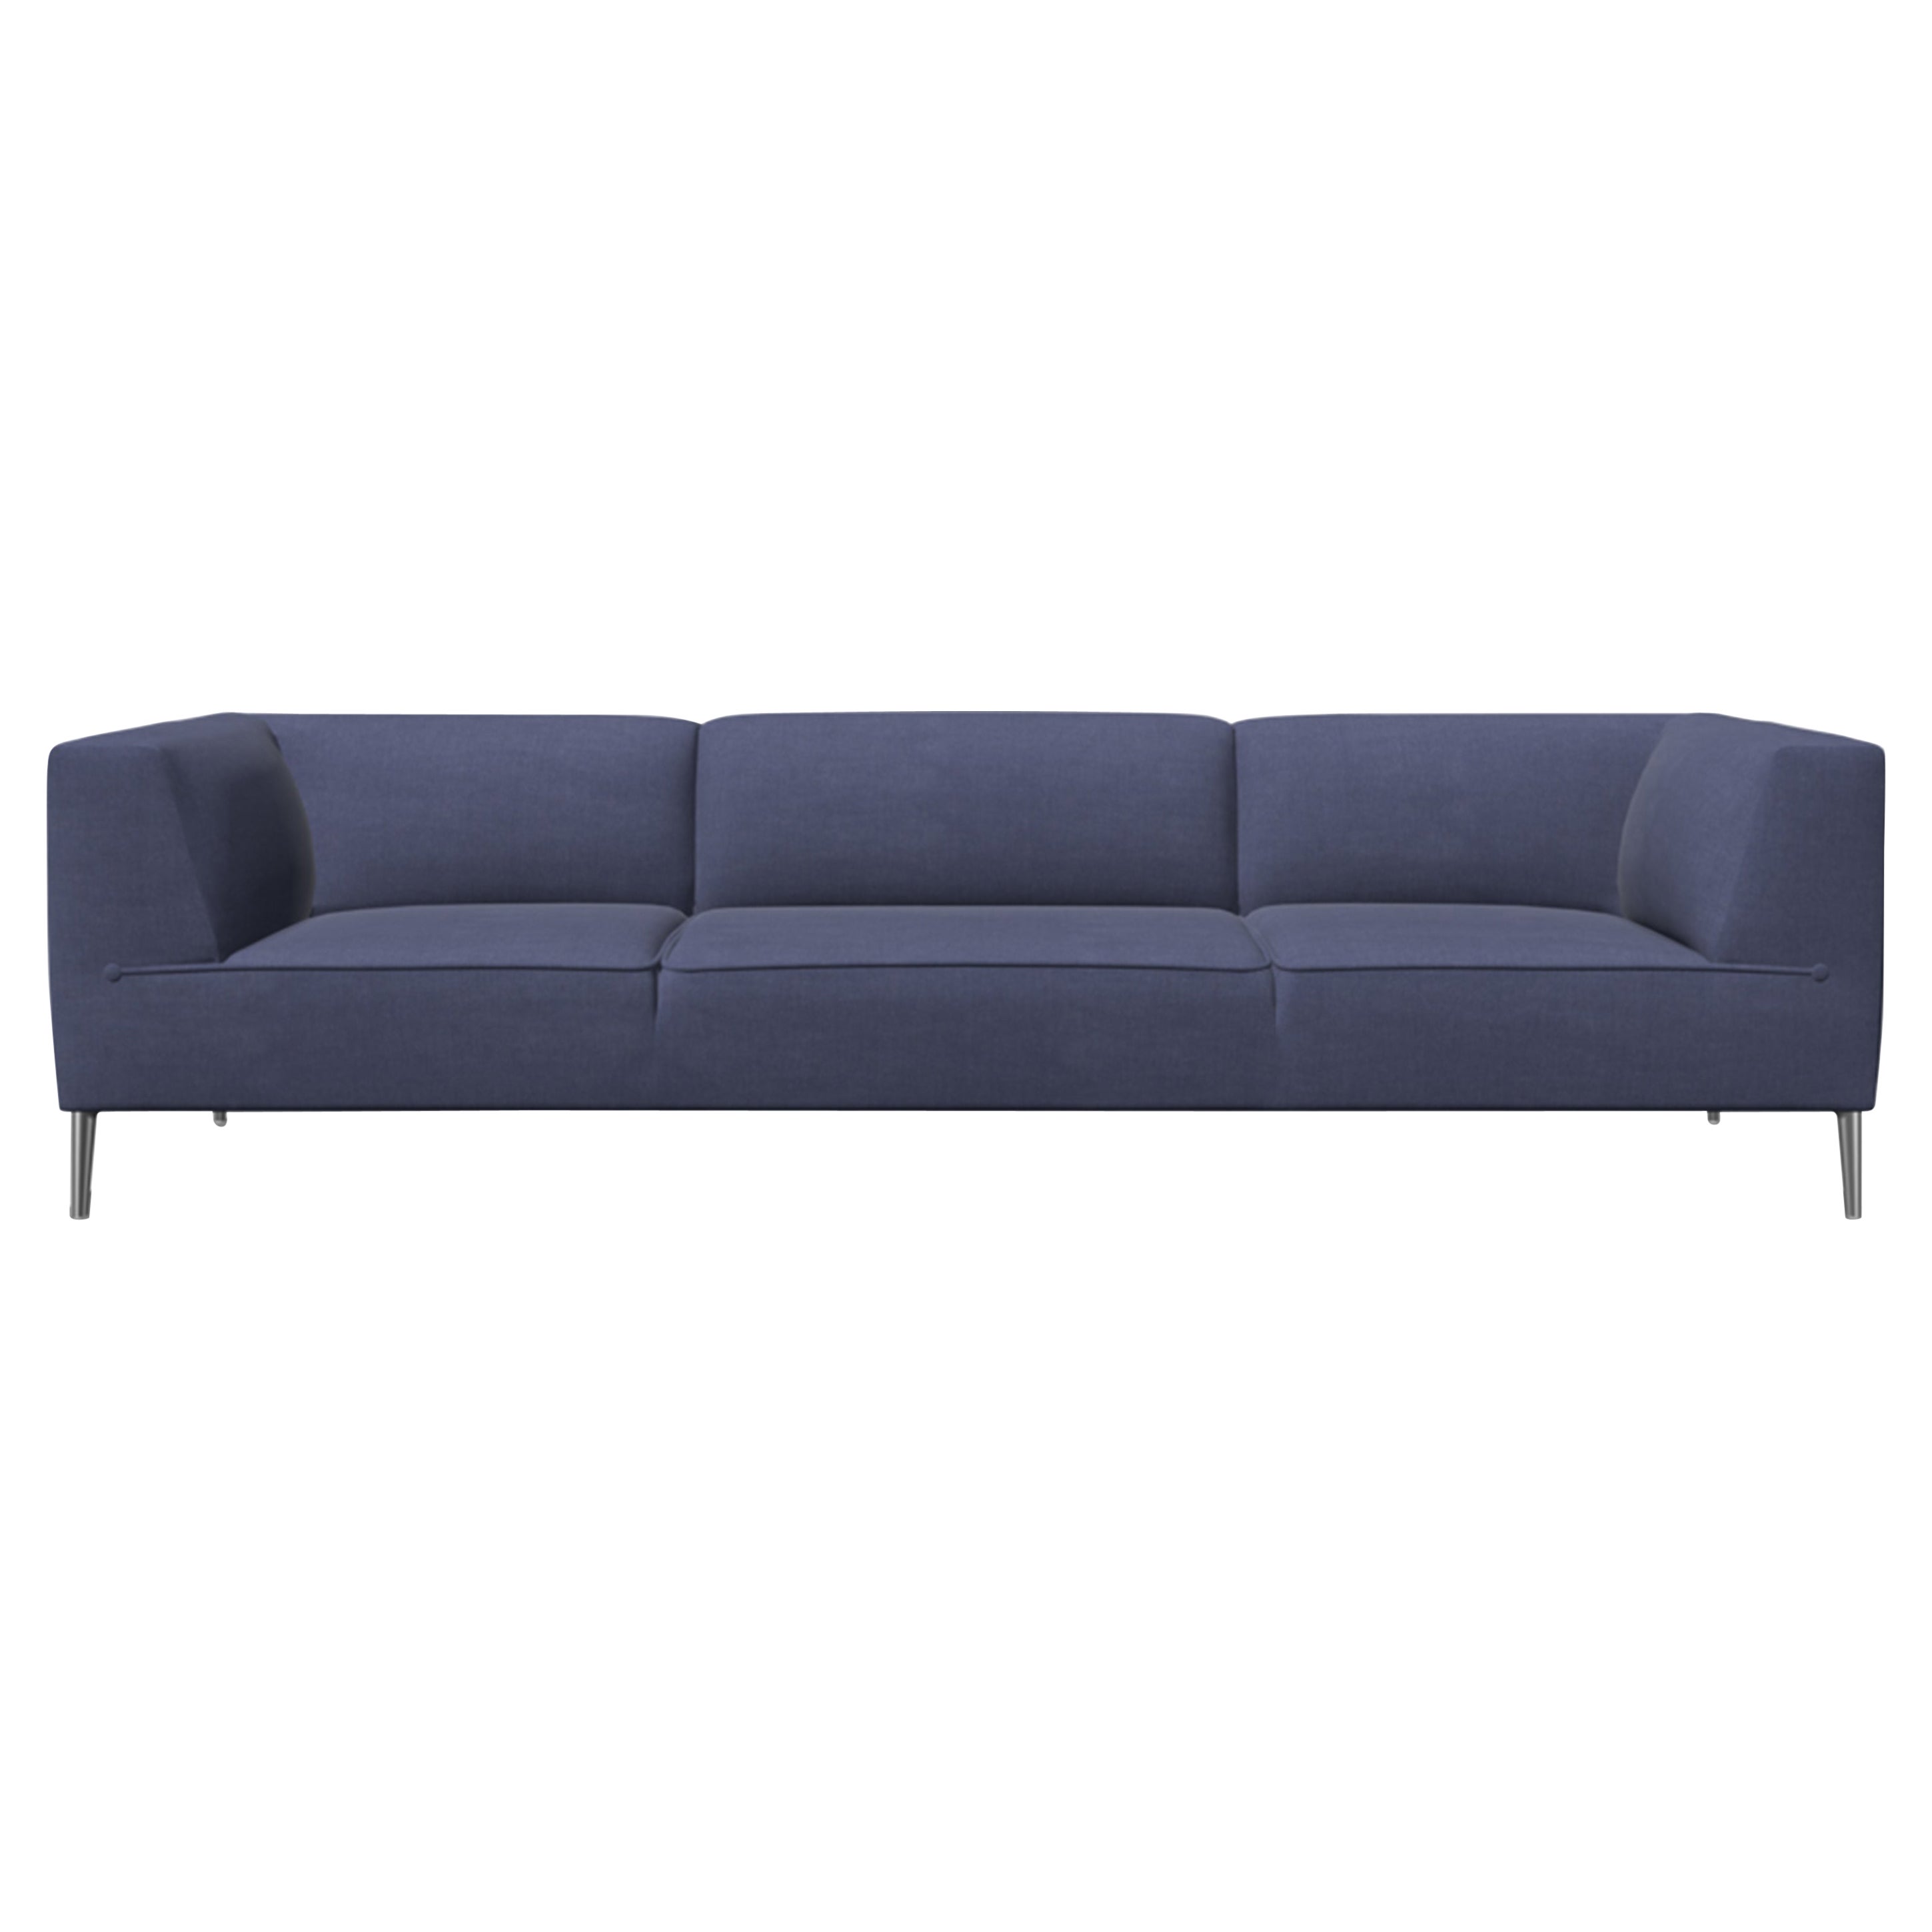 Moooi Dreisitziges Sofa So Good aus Segeltuch mit 2 Polsterungen und polierten Aluminiumfüßen